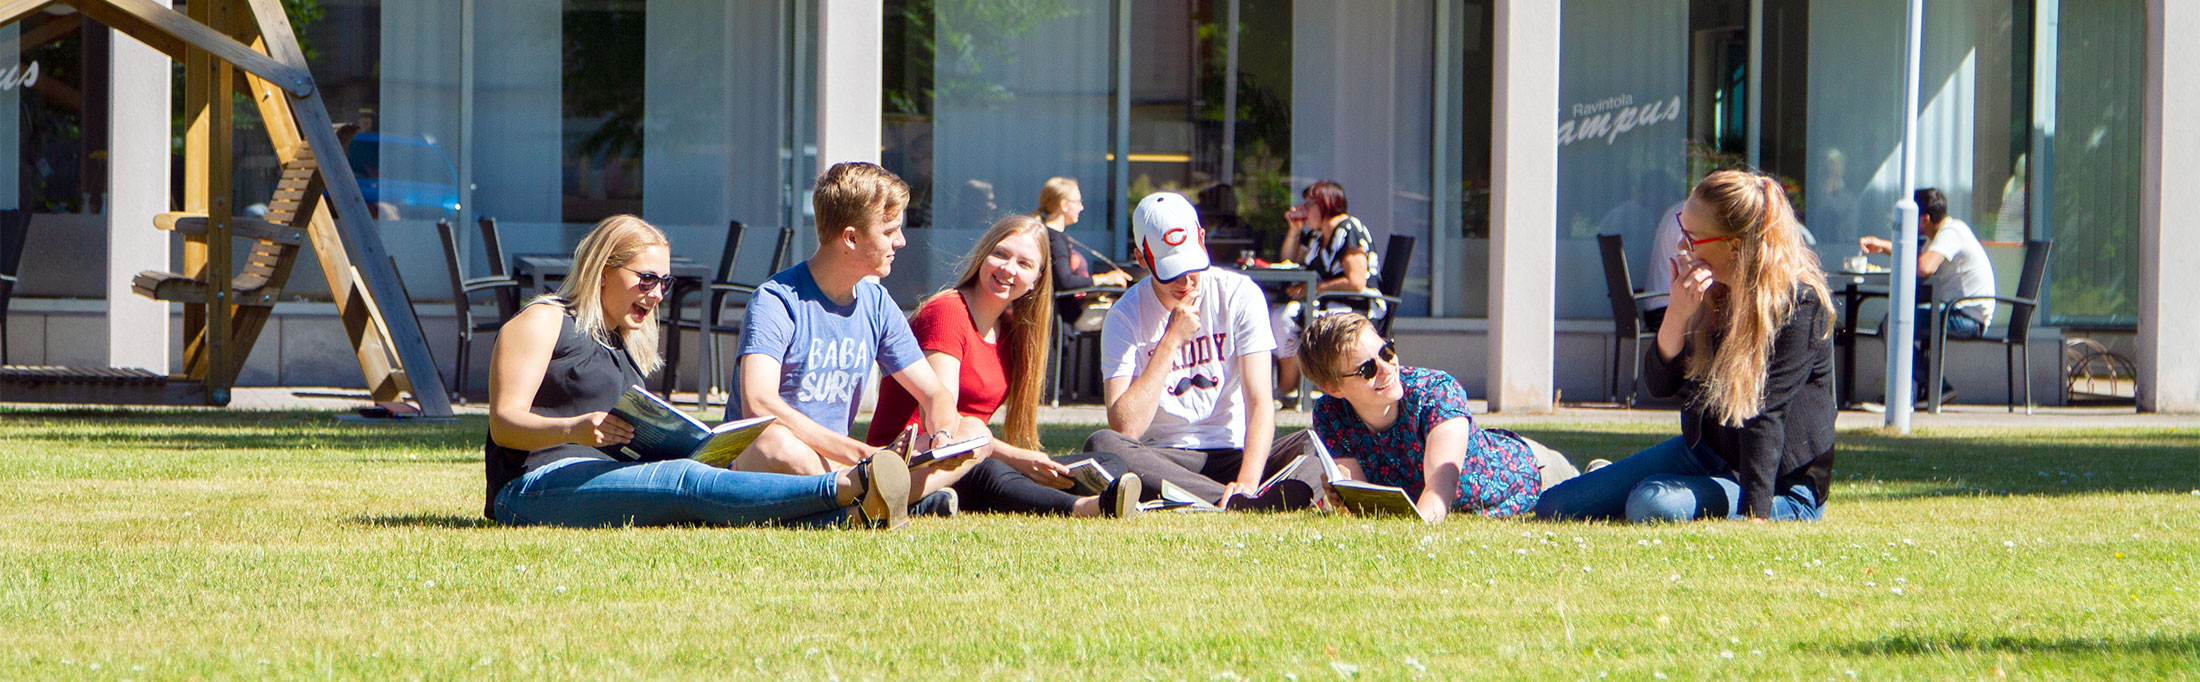 Opiskelijoita istumassa nurmikolla Mikkelin kesäyliopiston rakennuksen edessä.